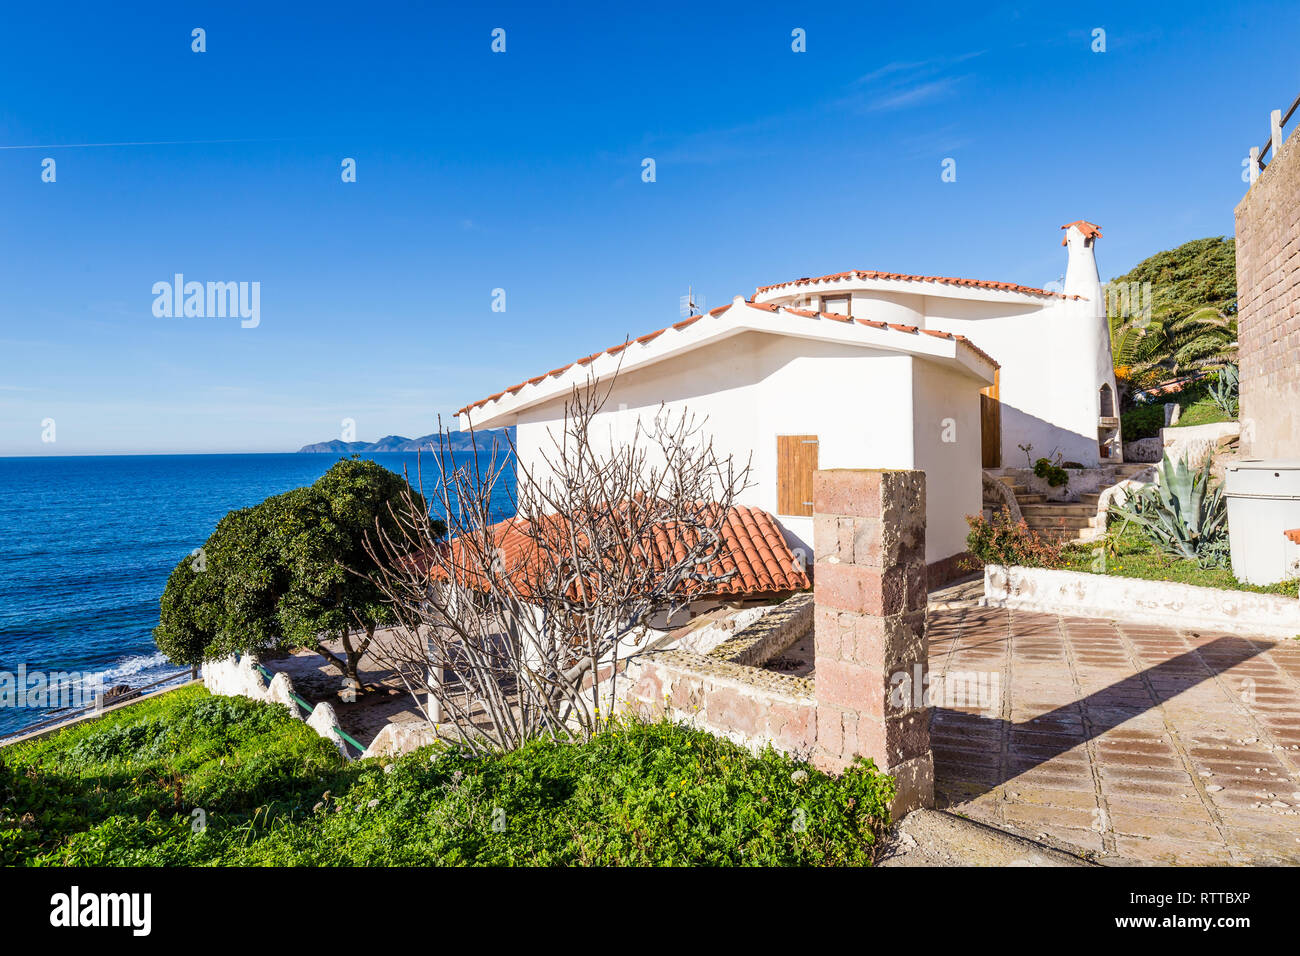 Porto Alabe, Sardaigne, île, Italie - Décembre 12, 2019 : belle maison de vacances aloing blanc la plage de Porto Alaba, Sardaigne, Italie Banque D'Images